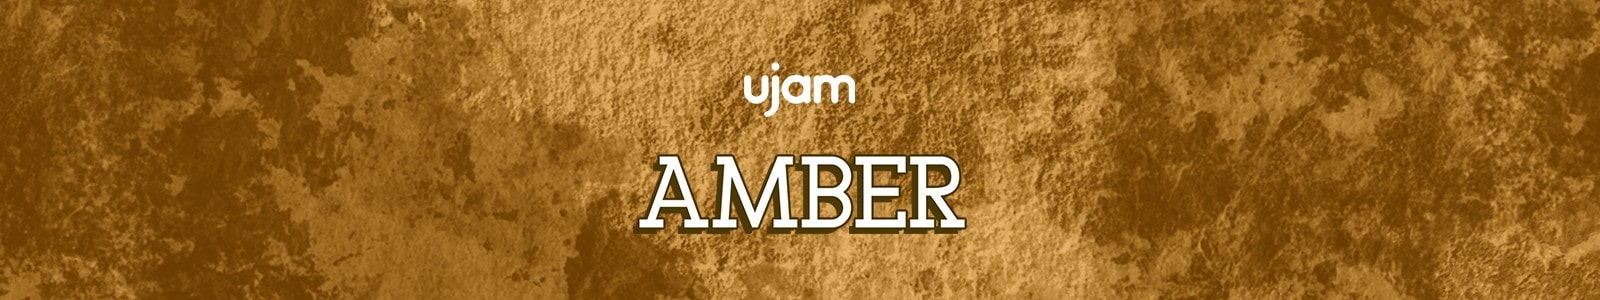 UJAM Virtual Guitarist Amber